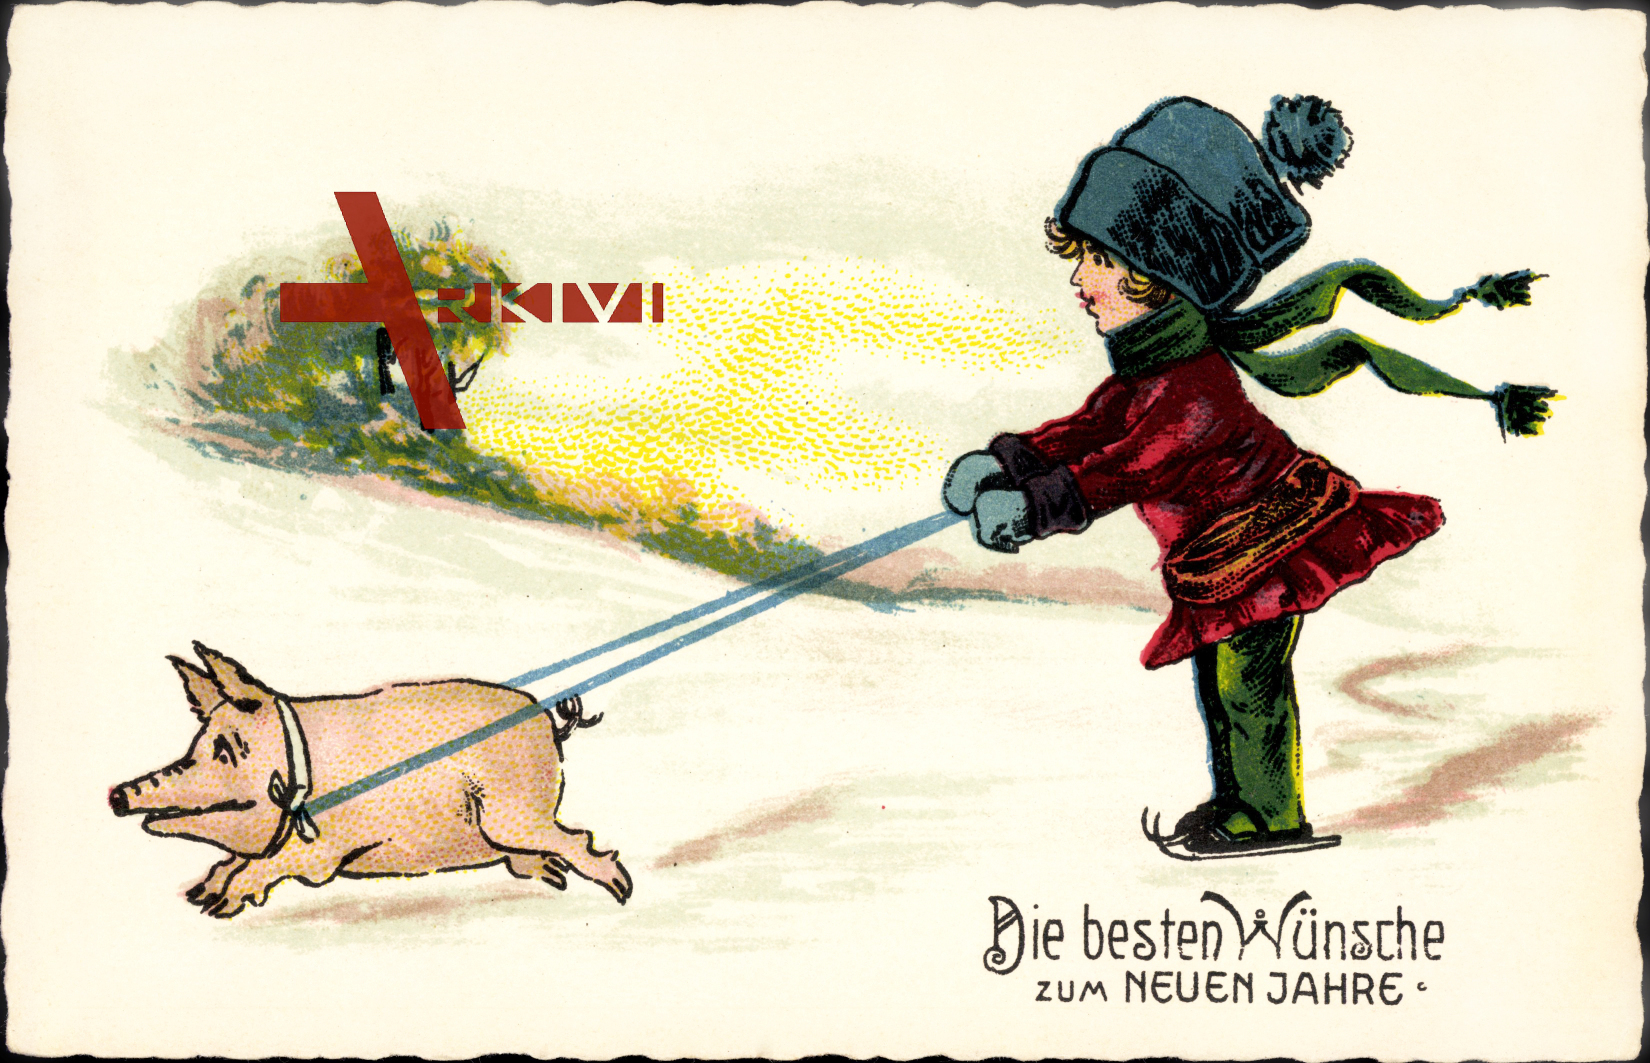 Glückwunsch Neujahr, Eisläuferin mit Schwein als Zugtier